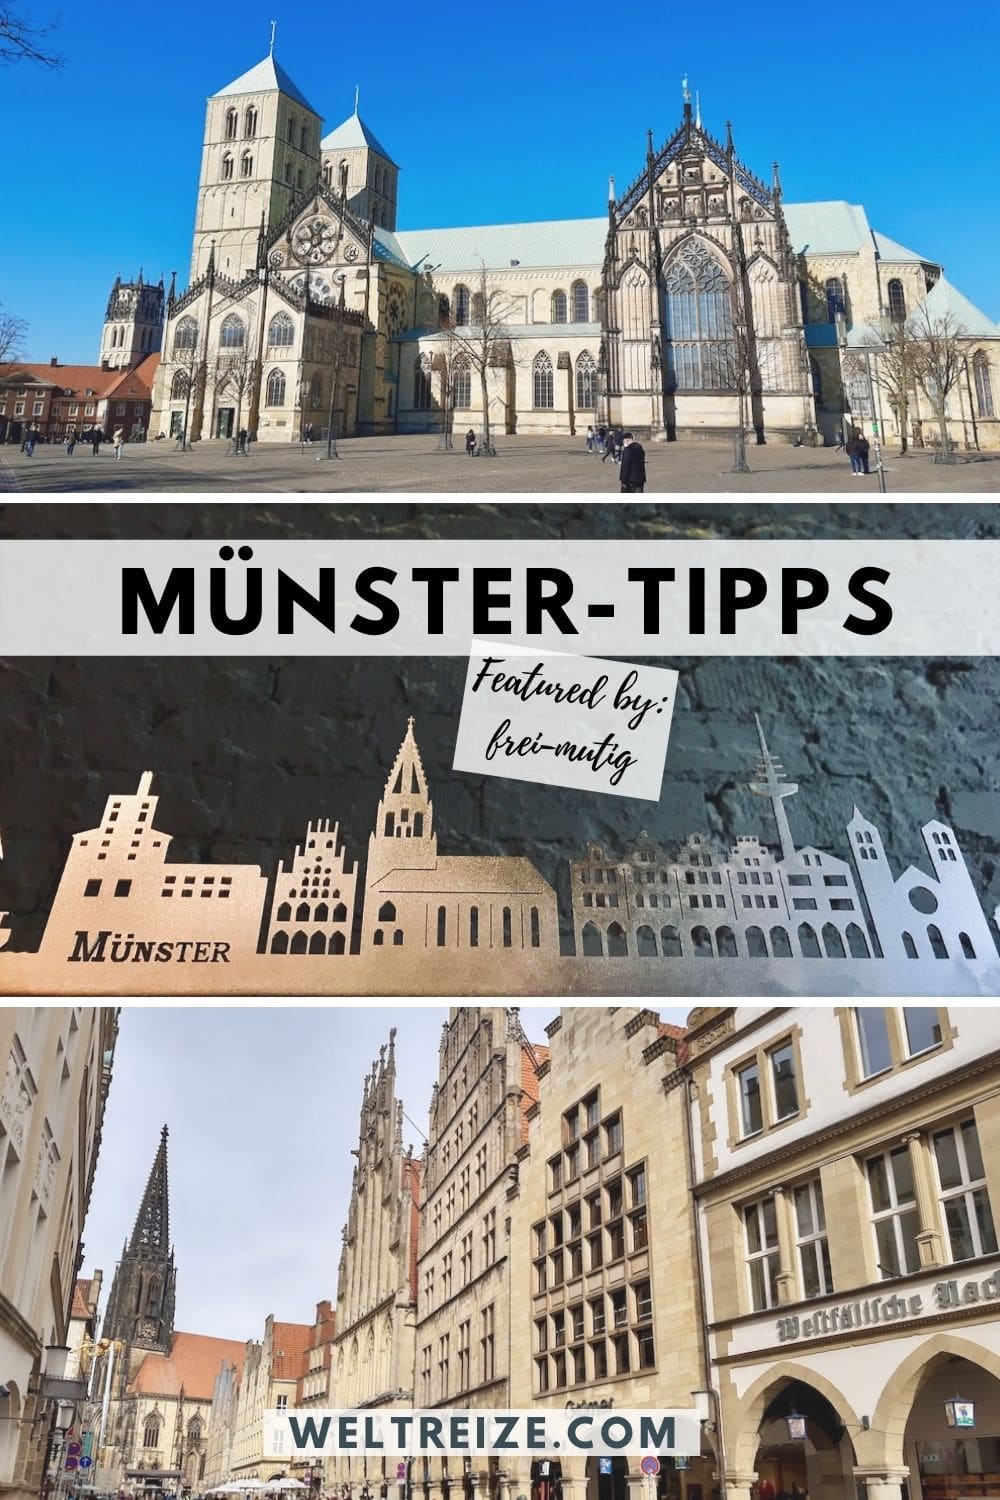 Münster-Tipps weiterempfehlen